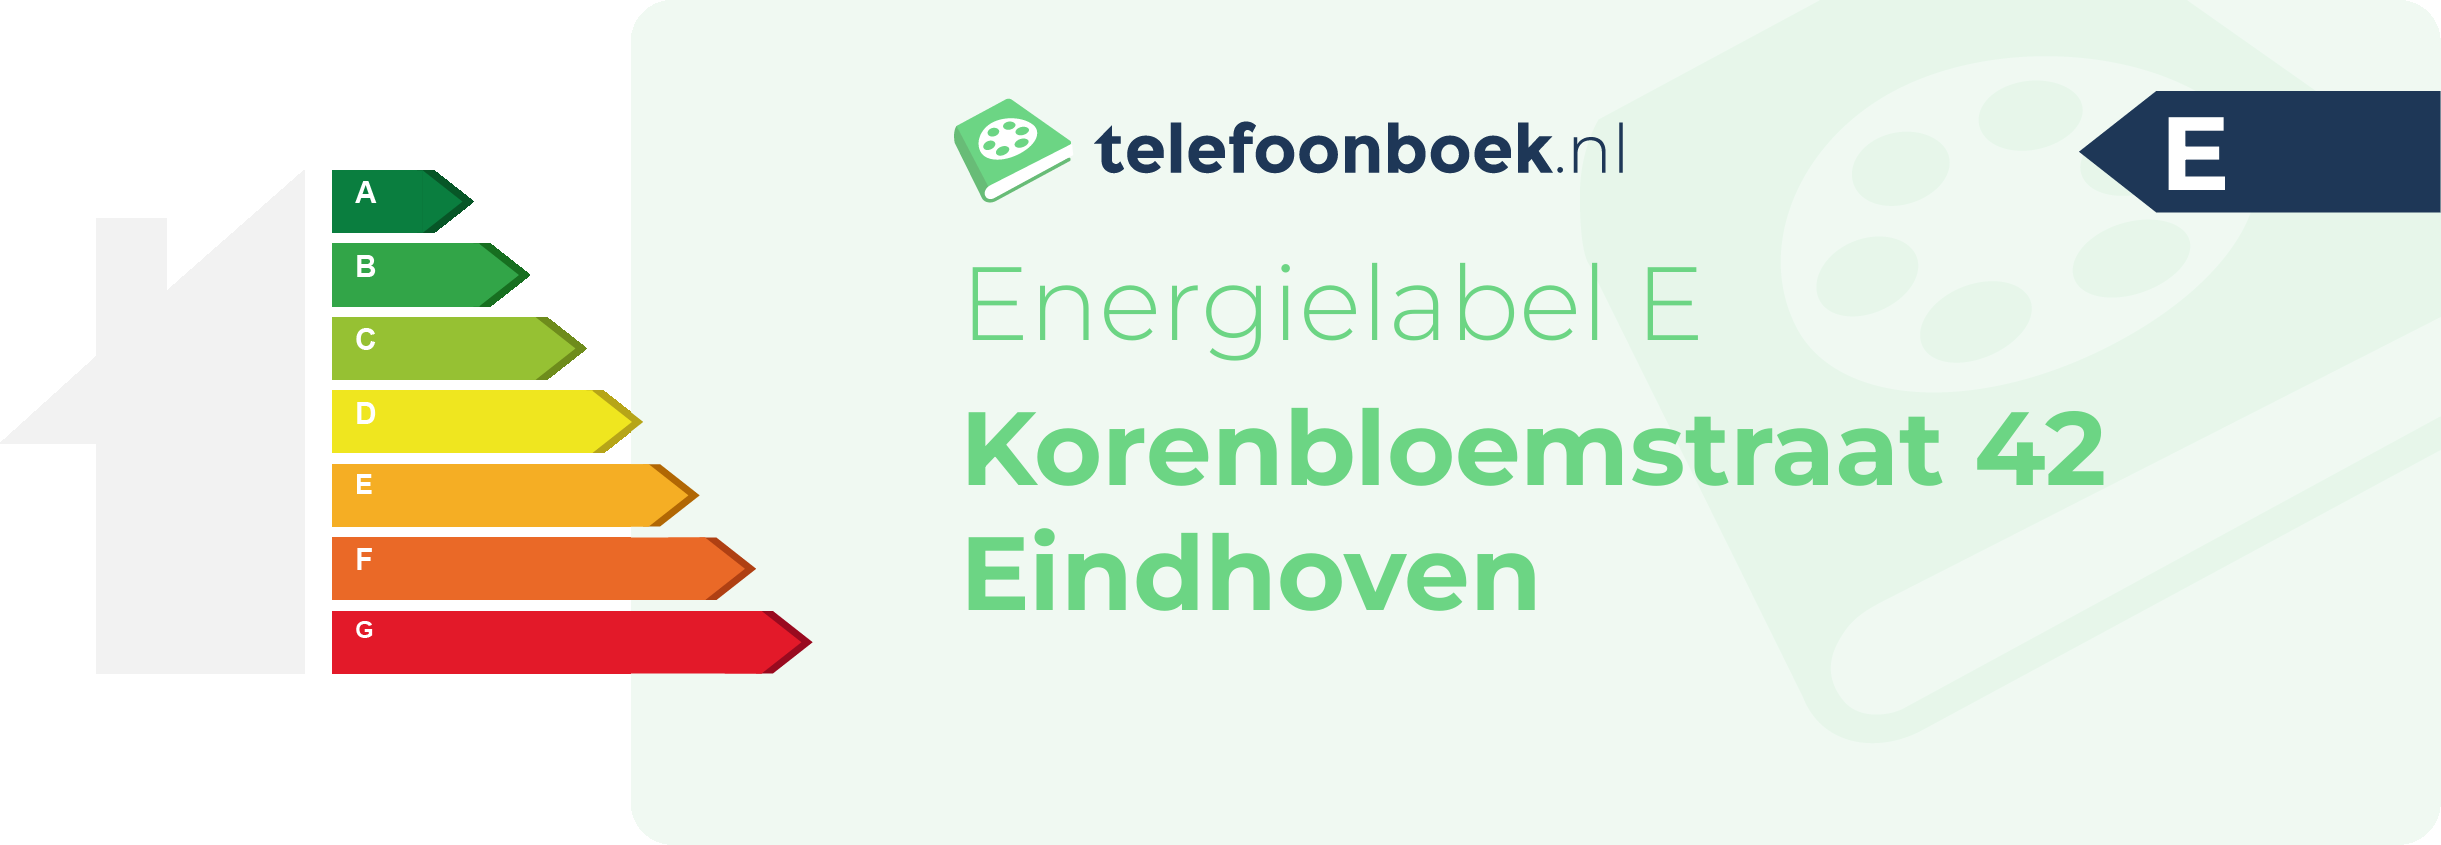 Energielabel Korenbloemstraat 42 Eindhoven